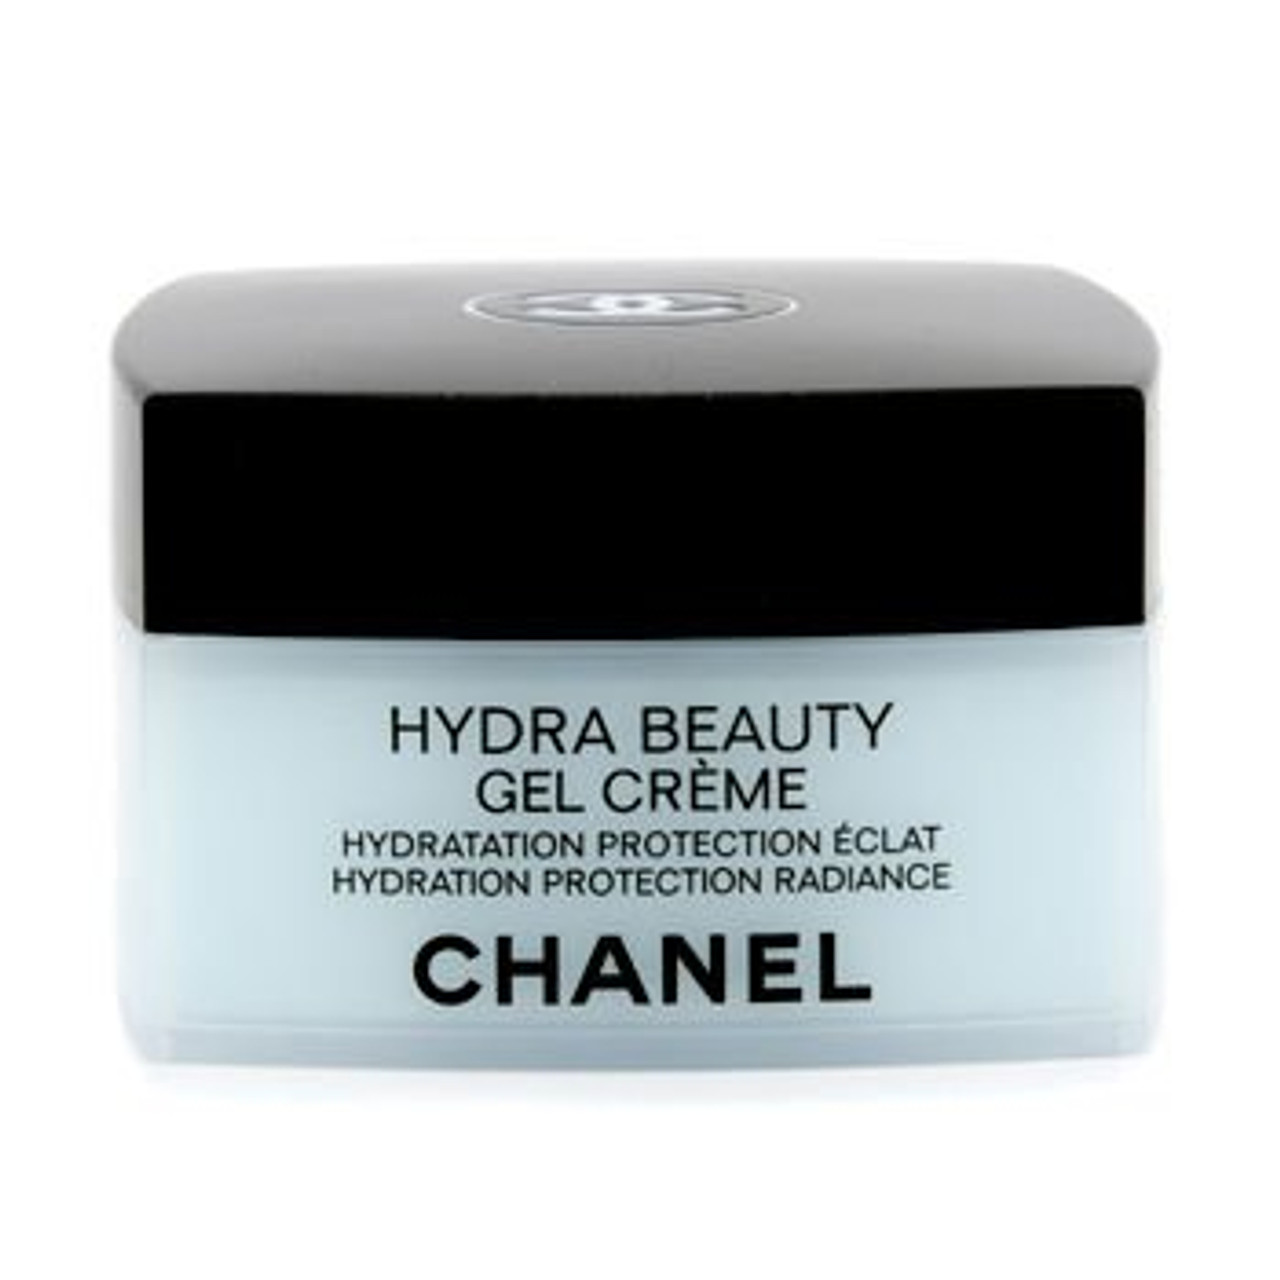 CHANEL Hydra Beauty Gel Creme 50g/1.7 OZ